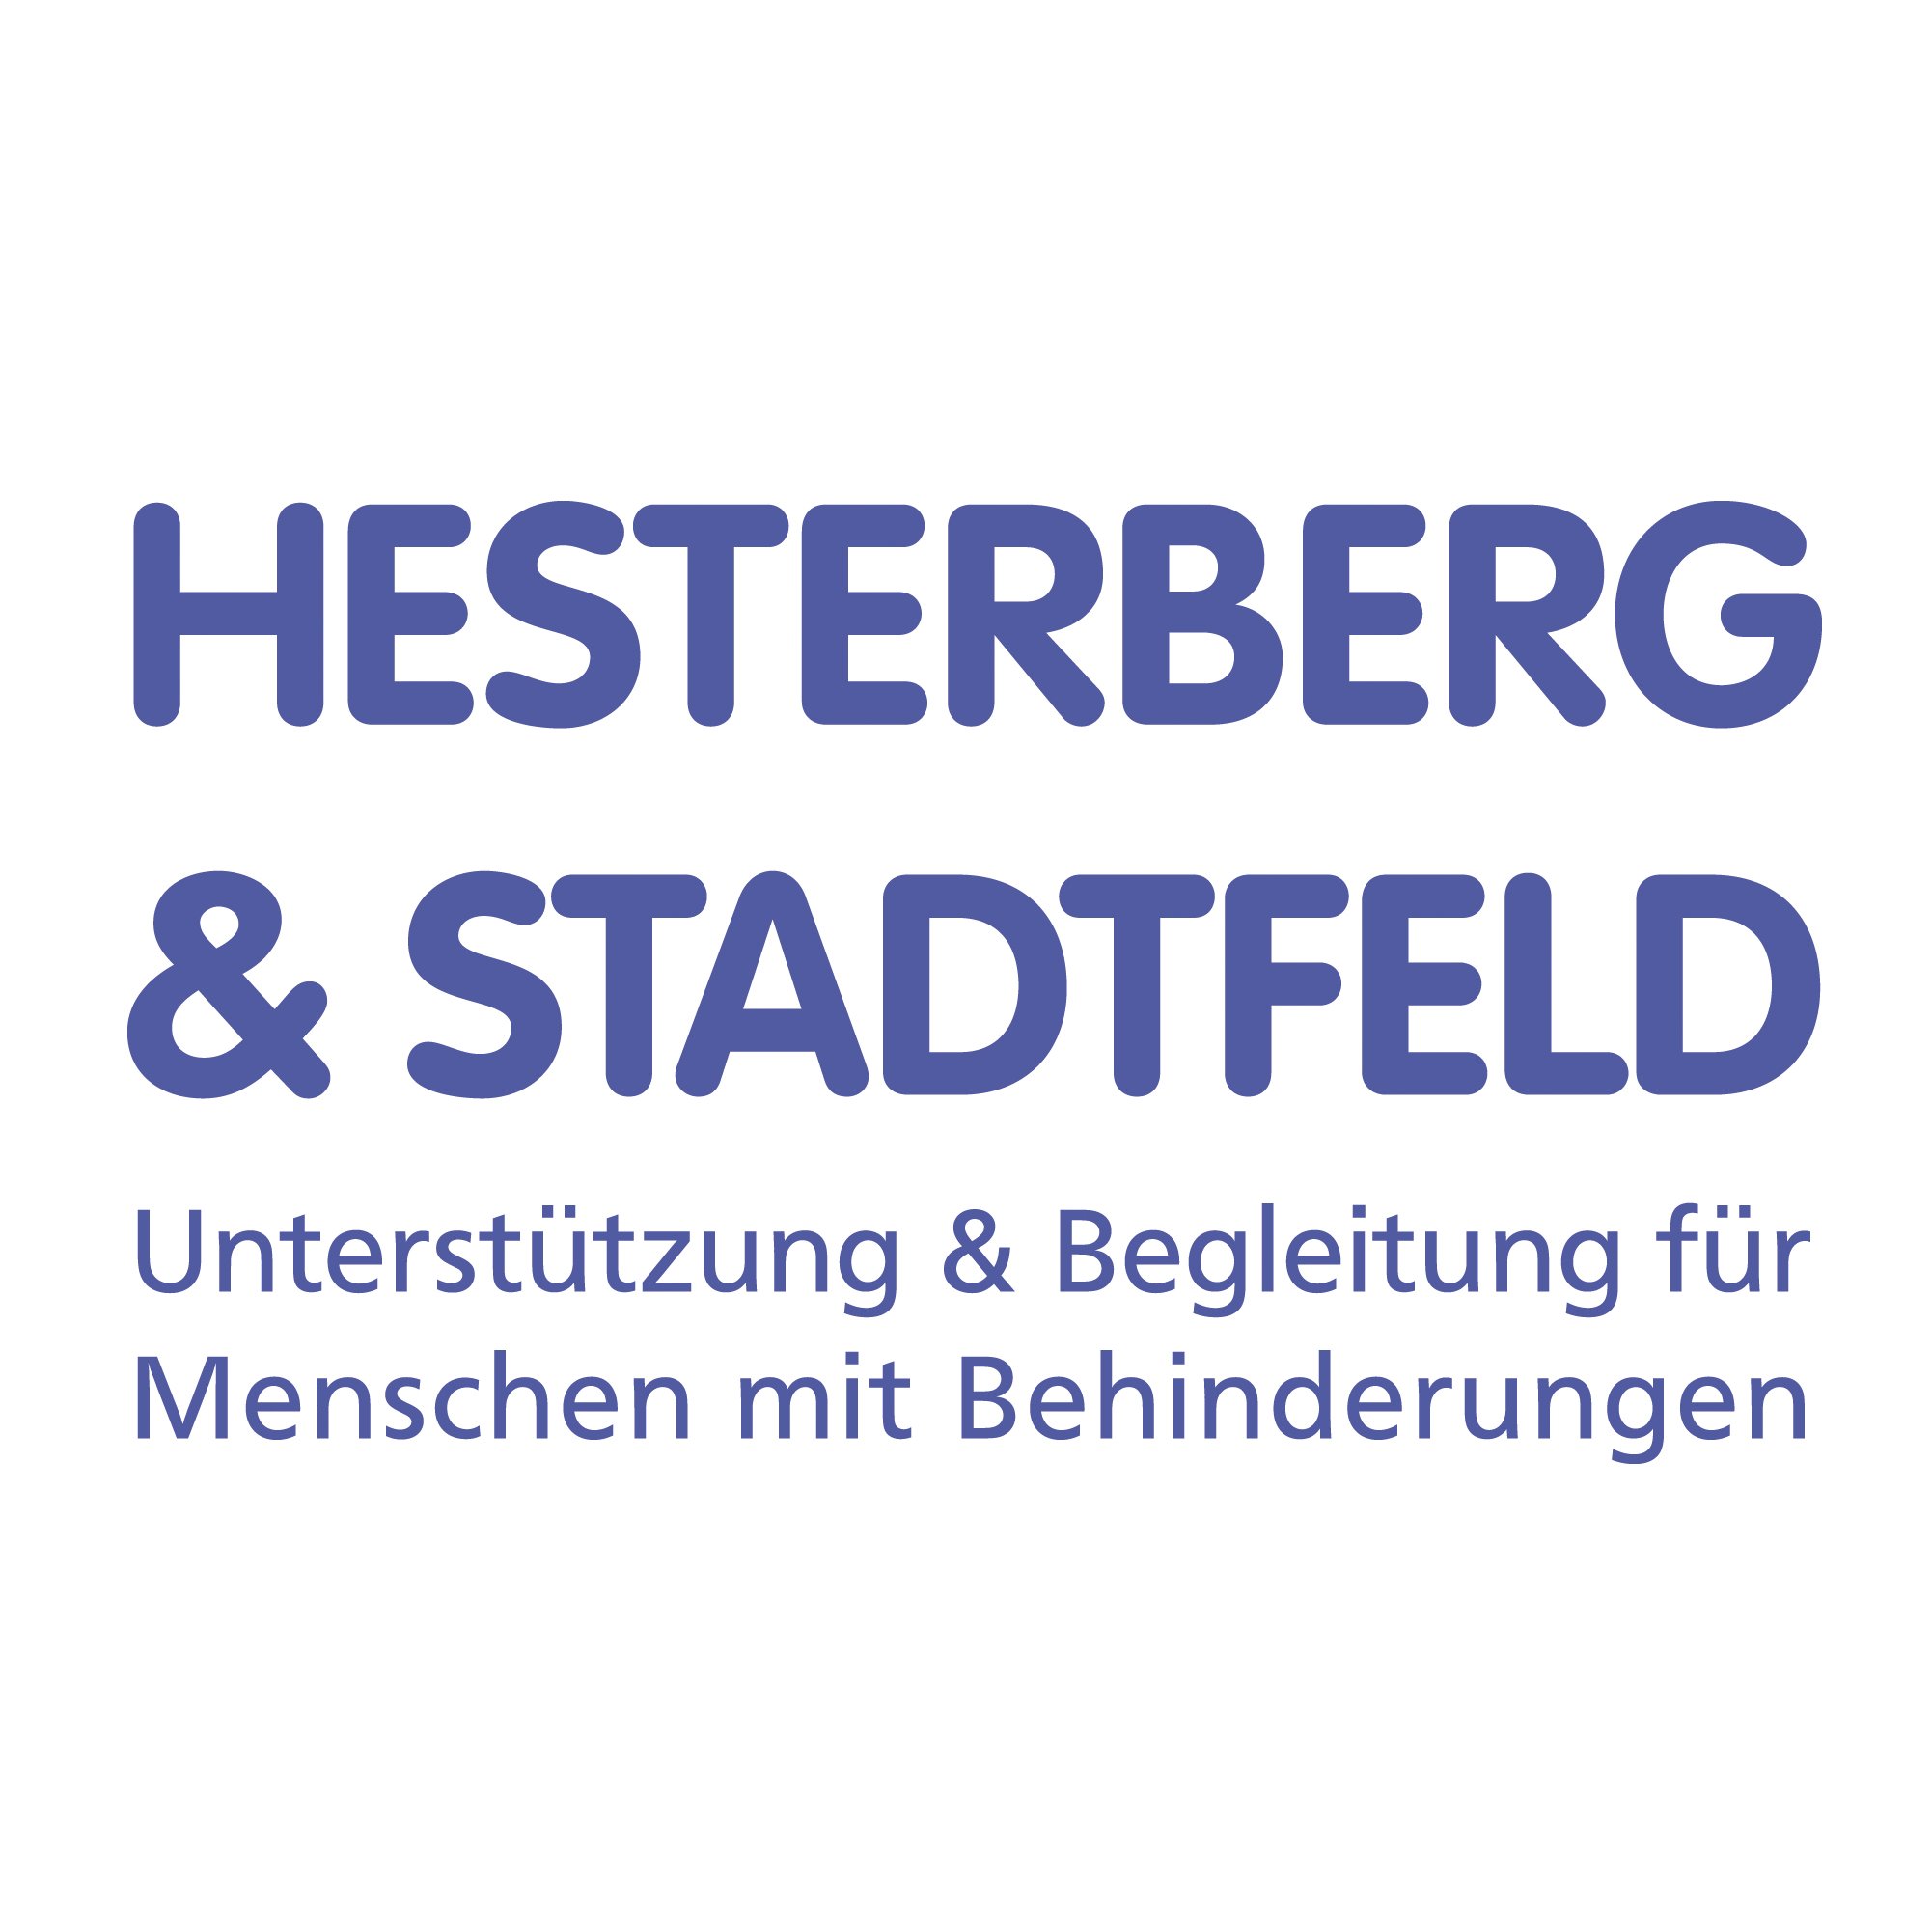 Logo von Wohnen im Mühlental 6-8, Schleswig, Hesterberg & Stadtfeld gGmbH